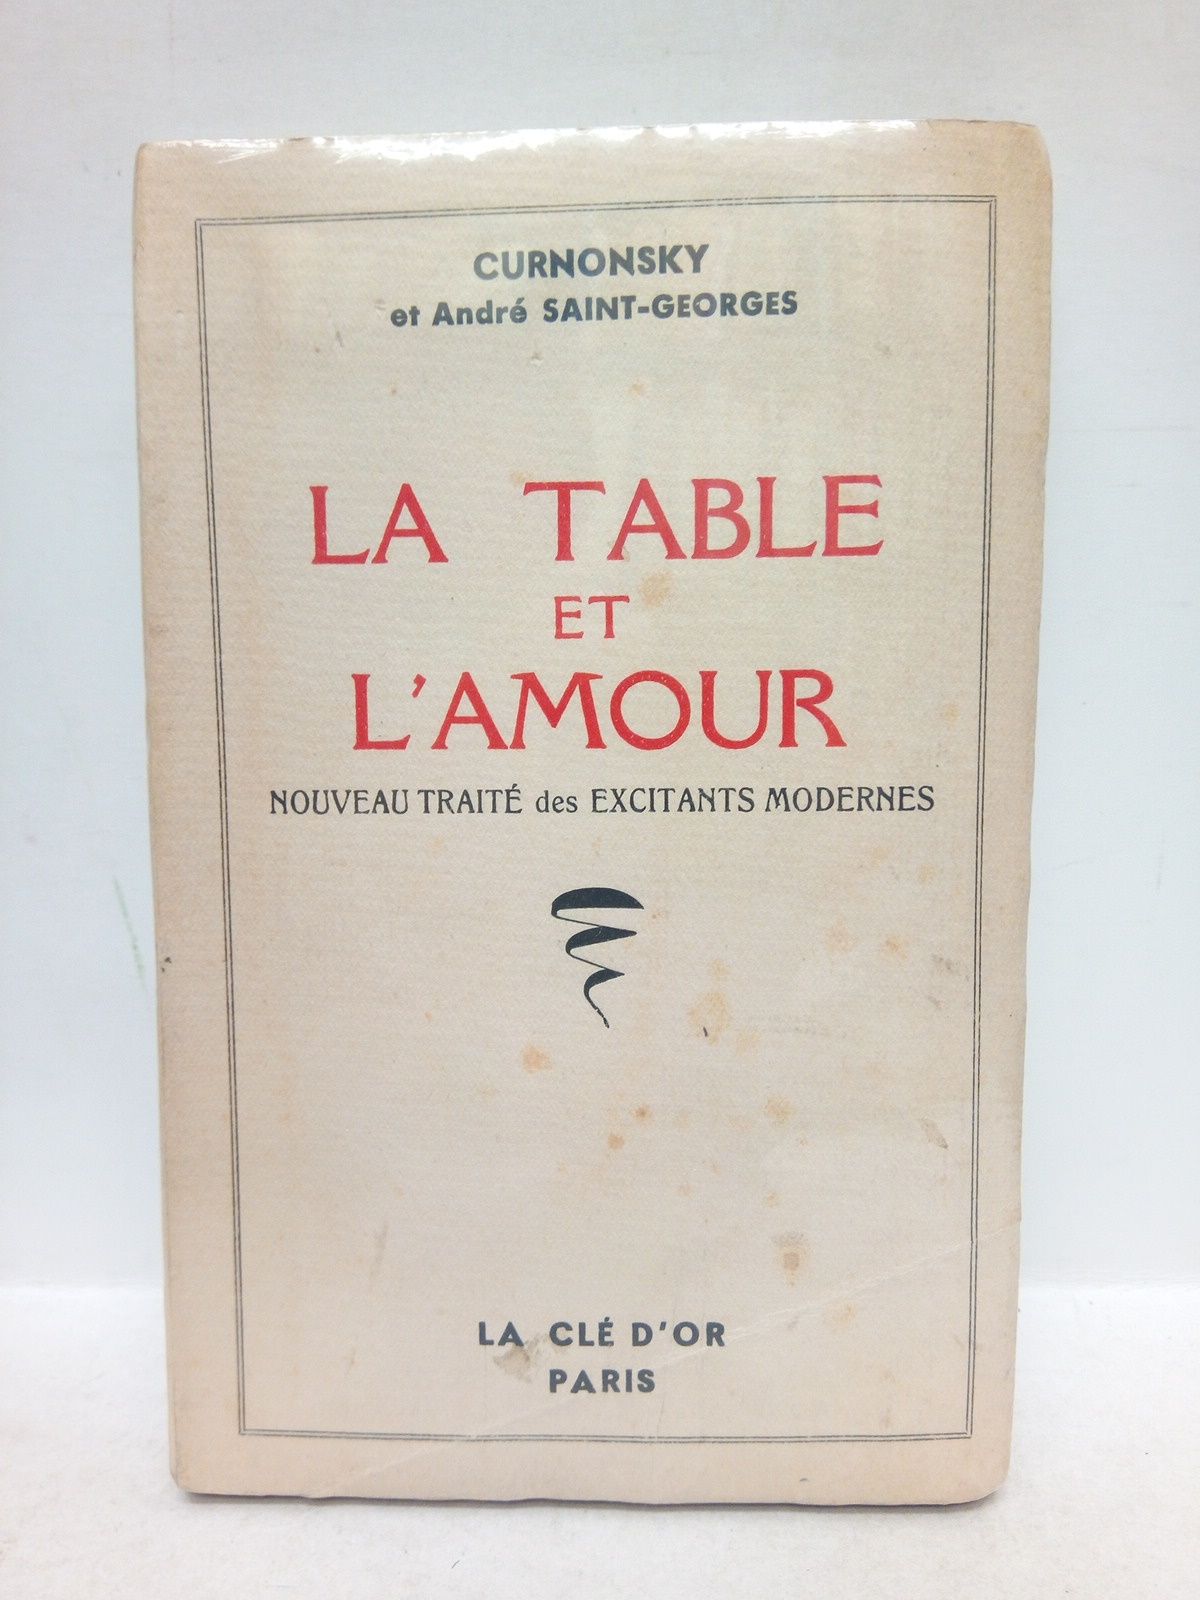 CURNONSKY et Andr Saint-Georges - La Table et l'Amour. Nouveau Trait des Excitants Modernes